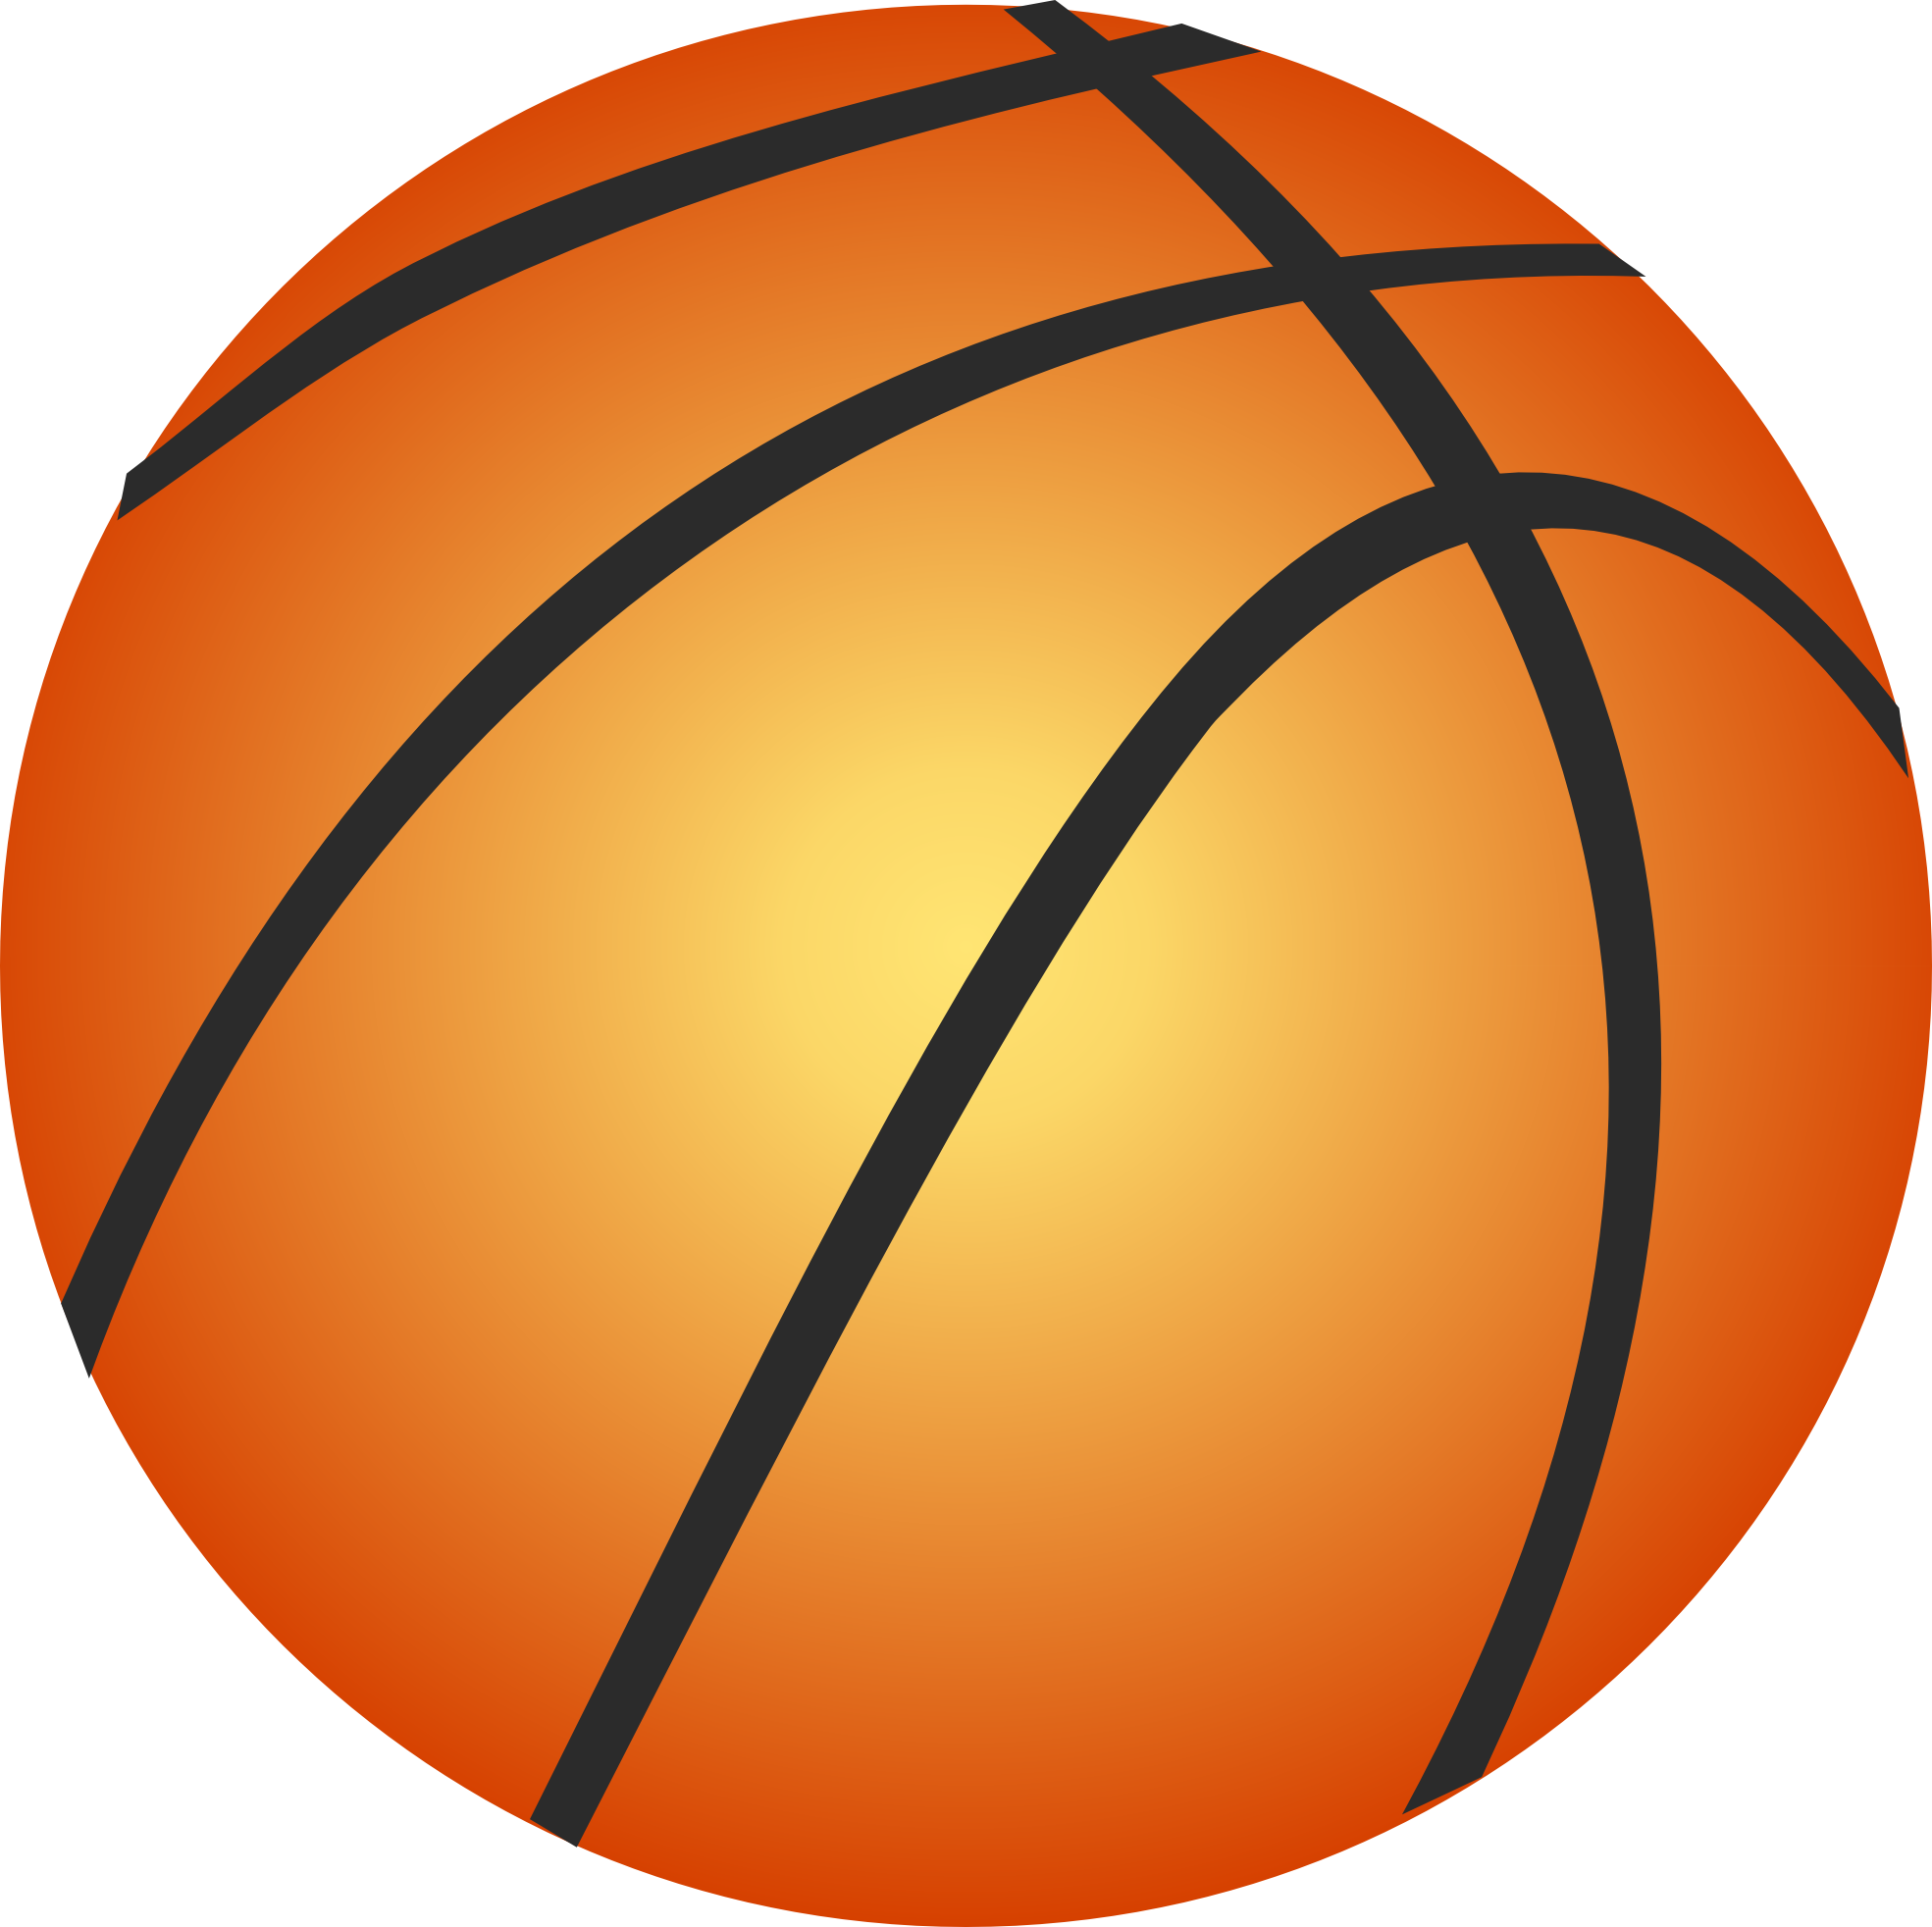 Cartoon Basketball Court - ClipArt Best